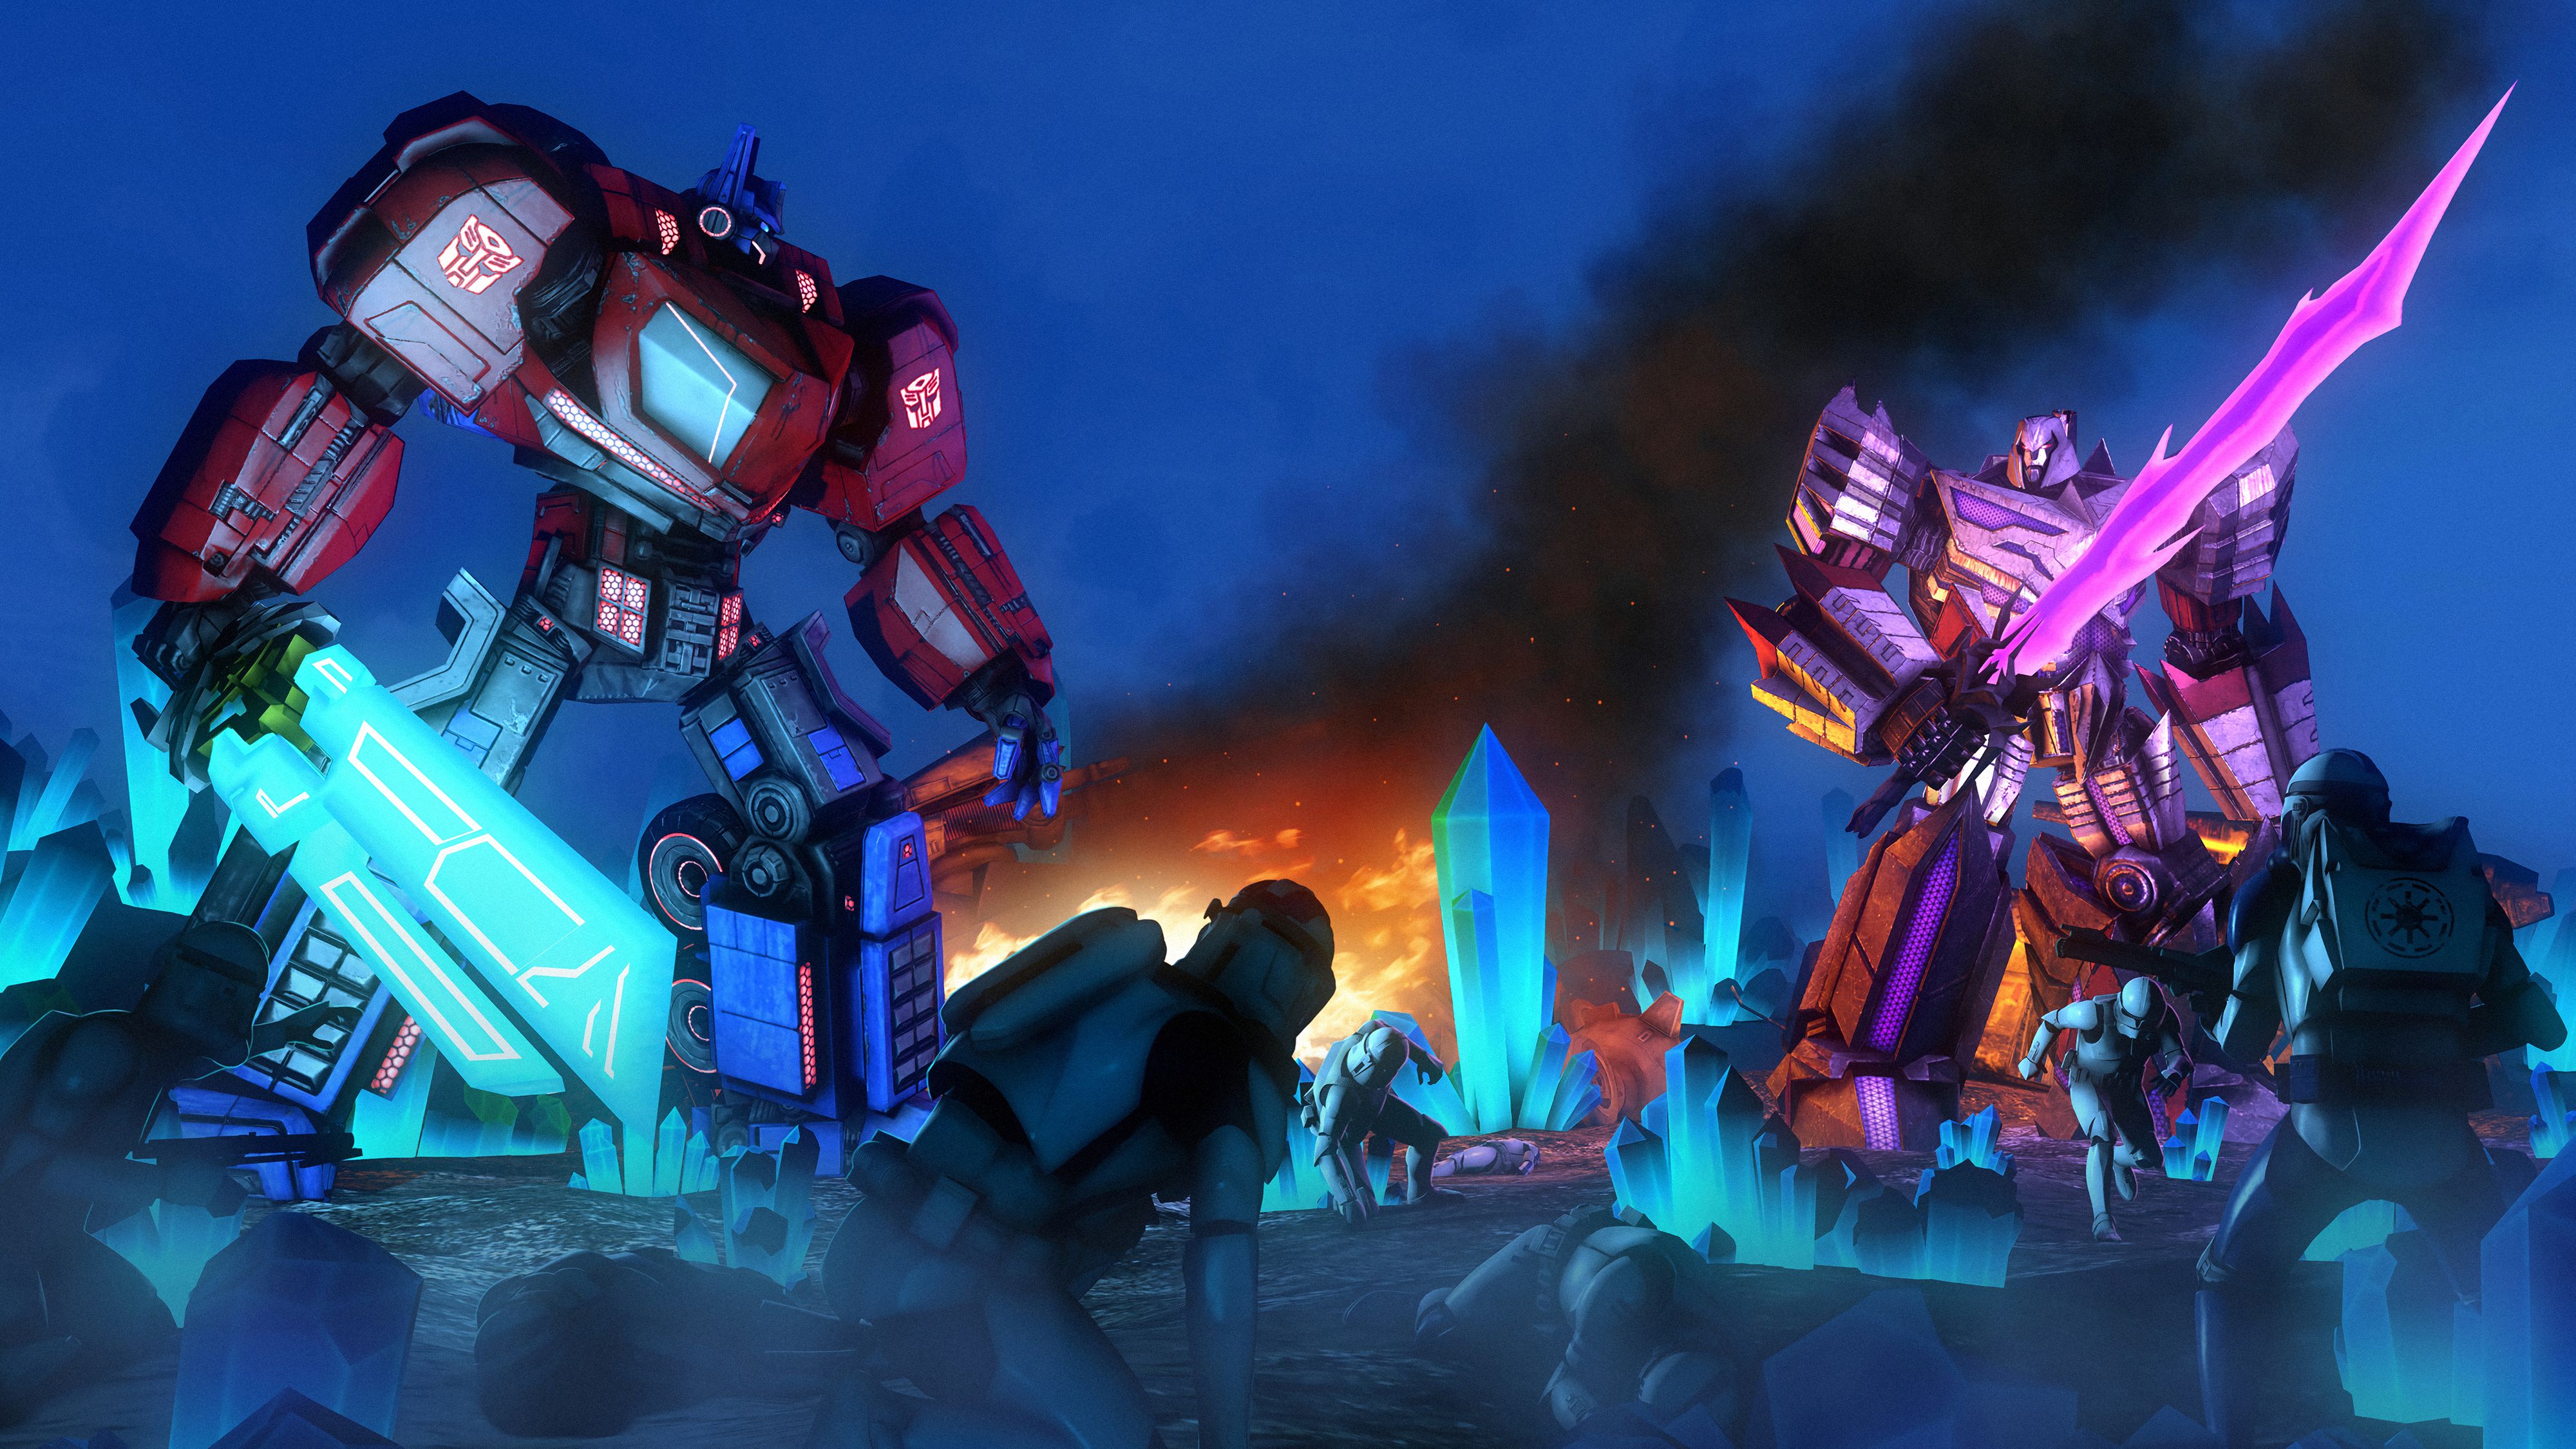 Transformers image for desktop (2019)